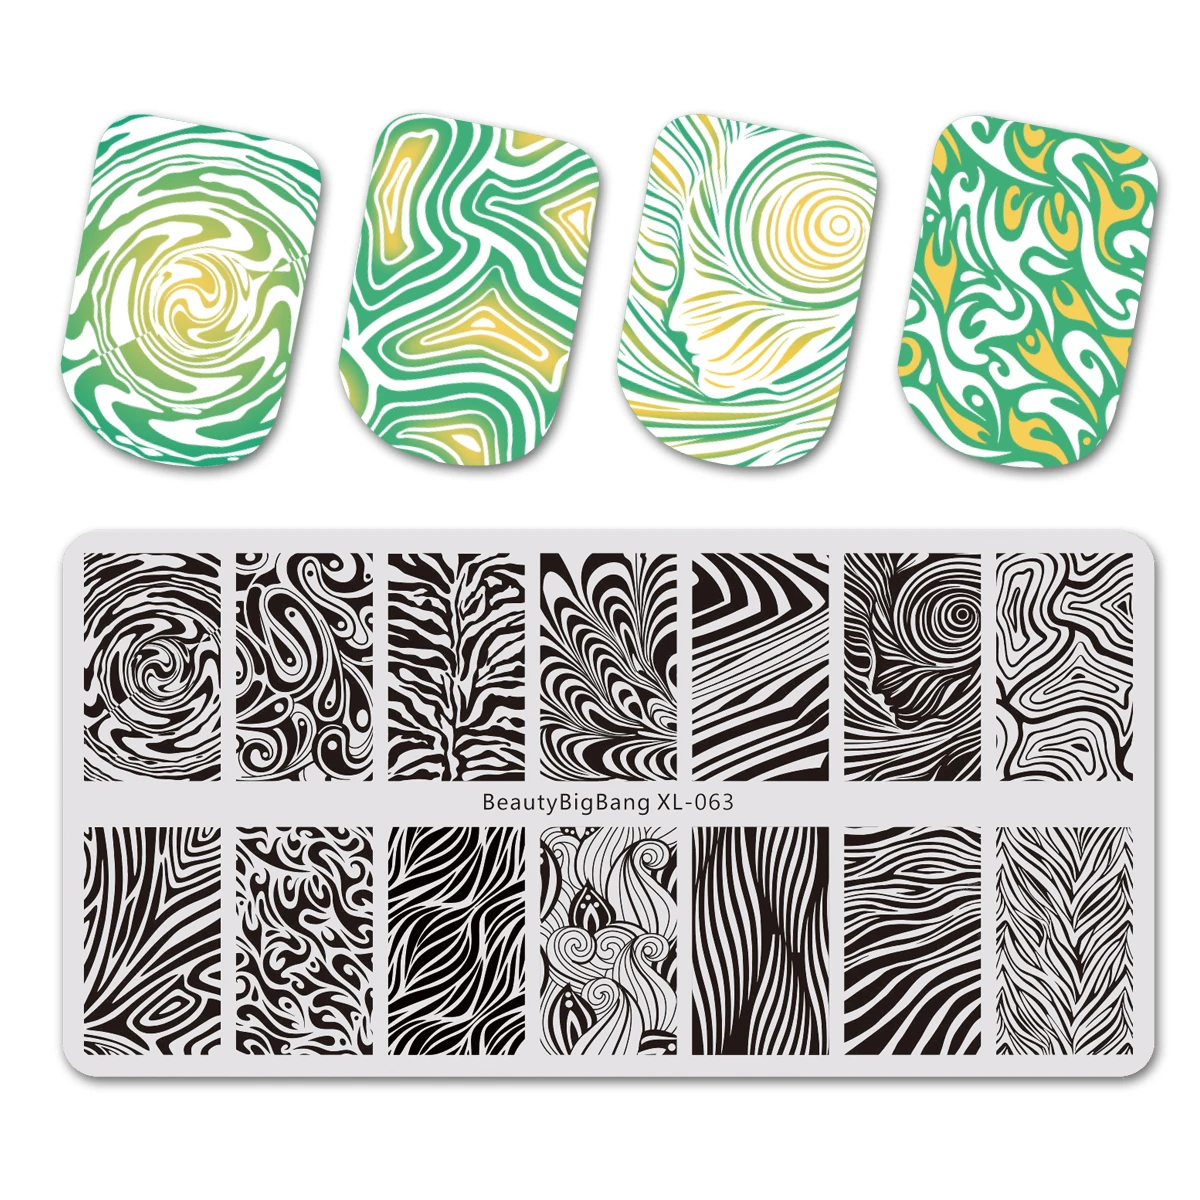 Beautybigbang ногтей штамповки пластины набор точка милое изображение Винтаж нержавеющая сталь печать для дизайна ногтей шаблон плесень XL-044-XL-086 - Цвет: 63